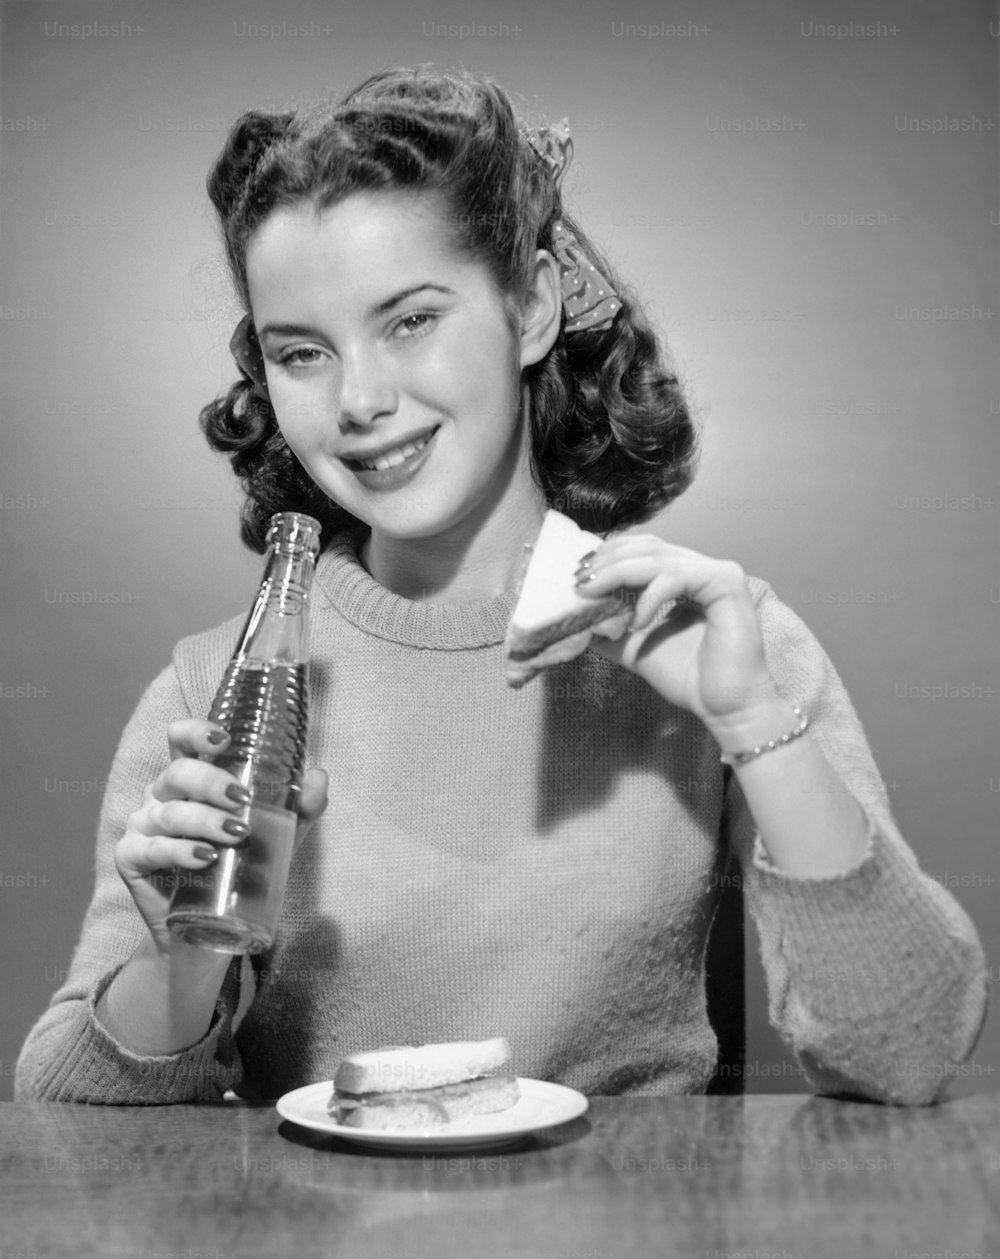 VEREINIGTE STAATEN - CIRCA 1950er Jahre: Teenager-Mädchen mit Soda und Sandwich.